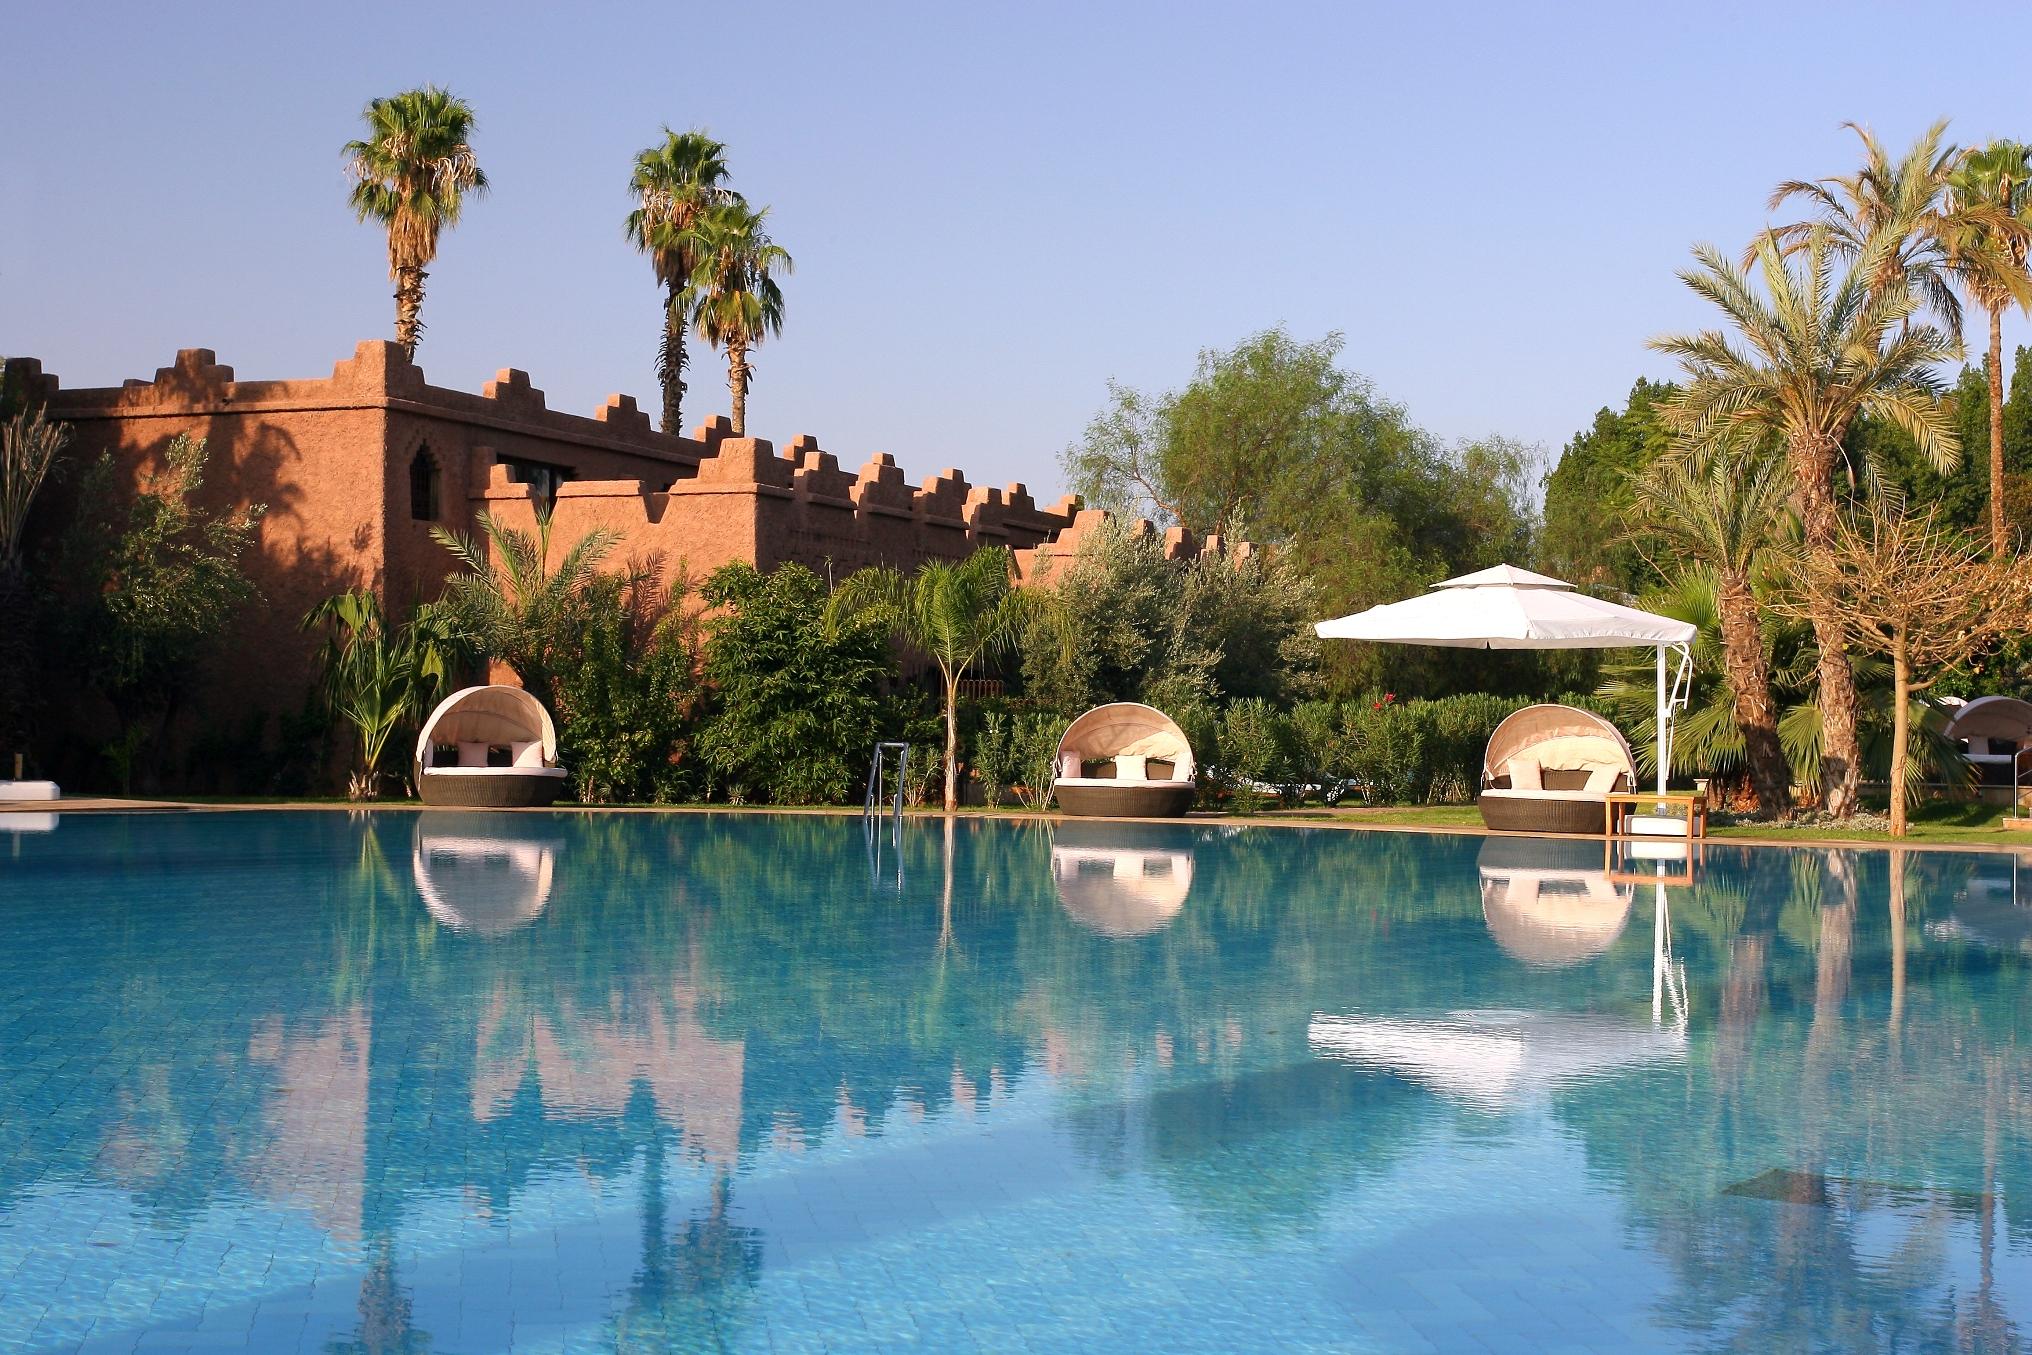 Piscine - Hôtel Es Saadi Marrakech Resort